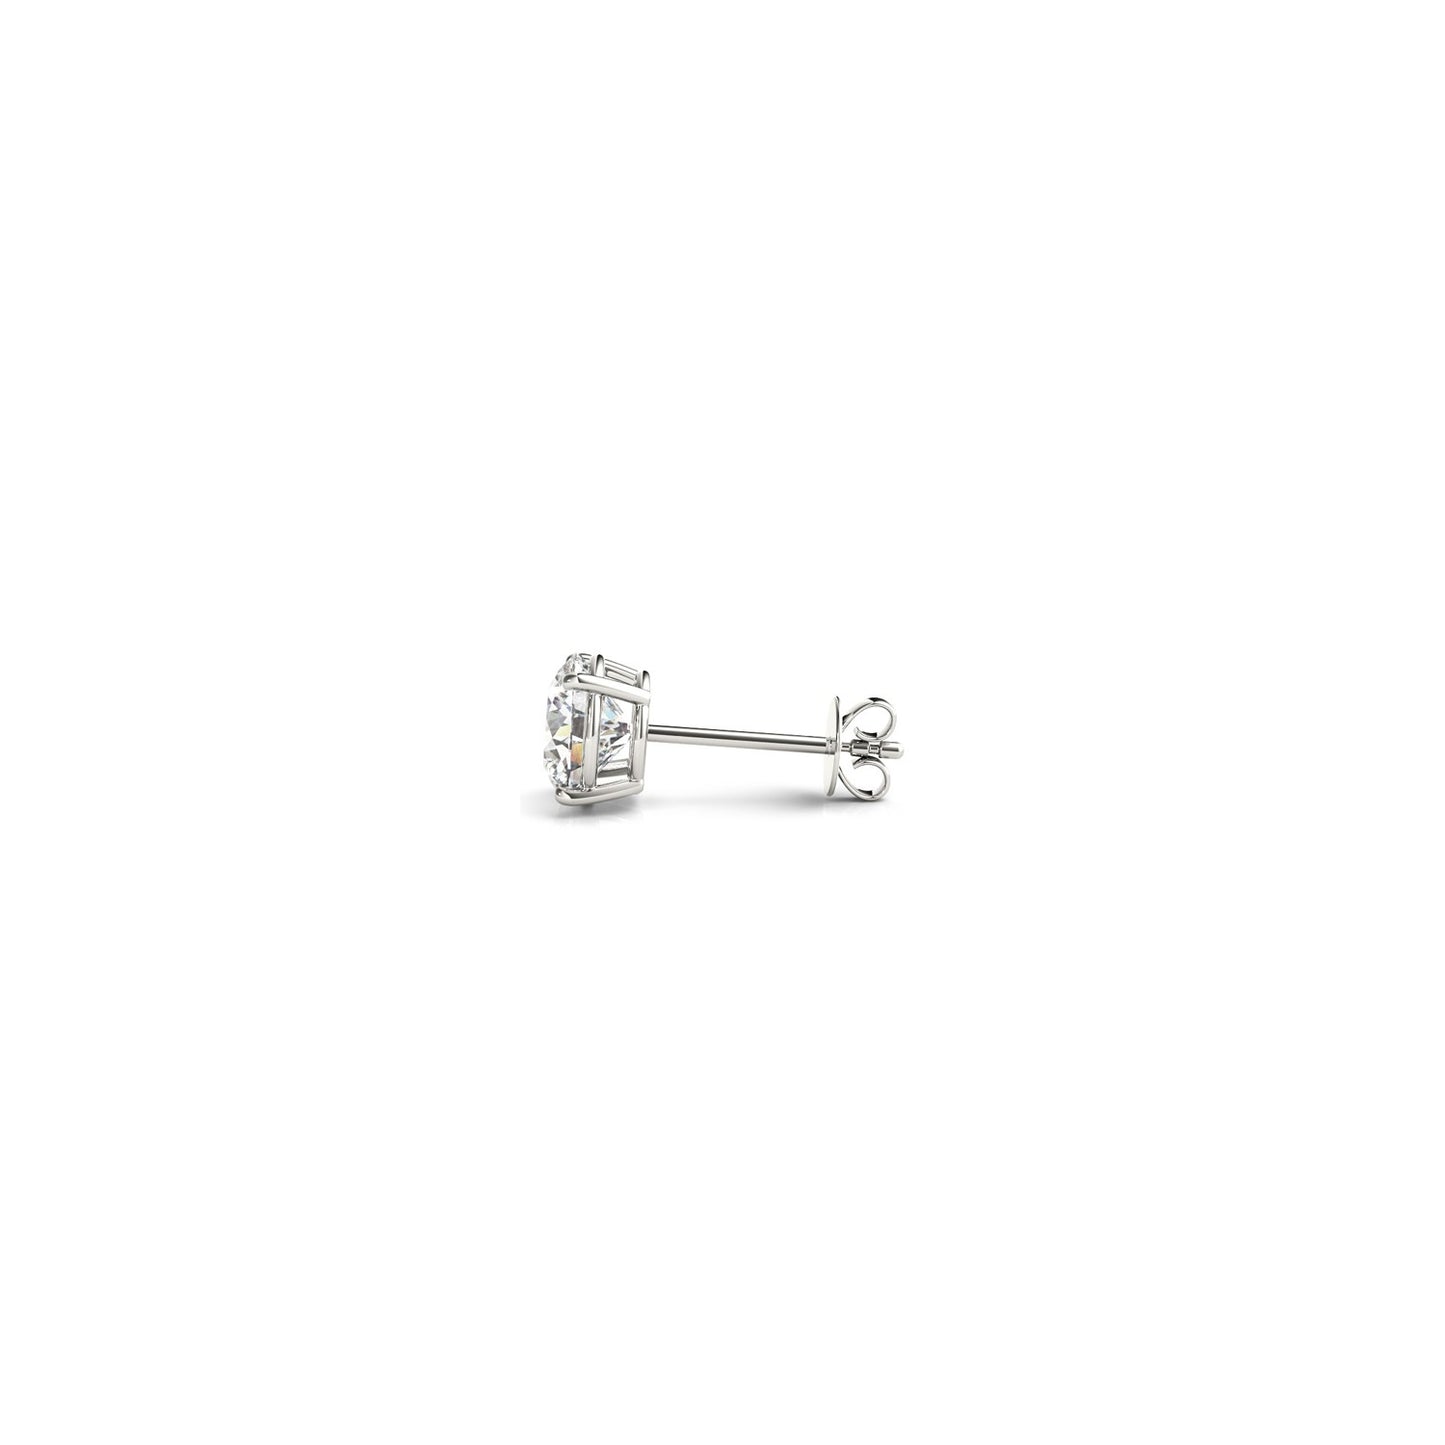 1/2 cttw Lab Grown Round Diamond Stud Earrings 14k White Gold (G/VS2)